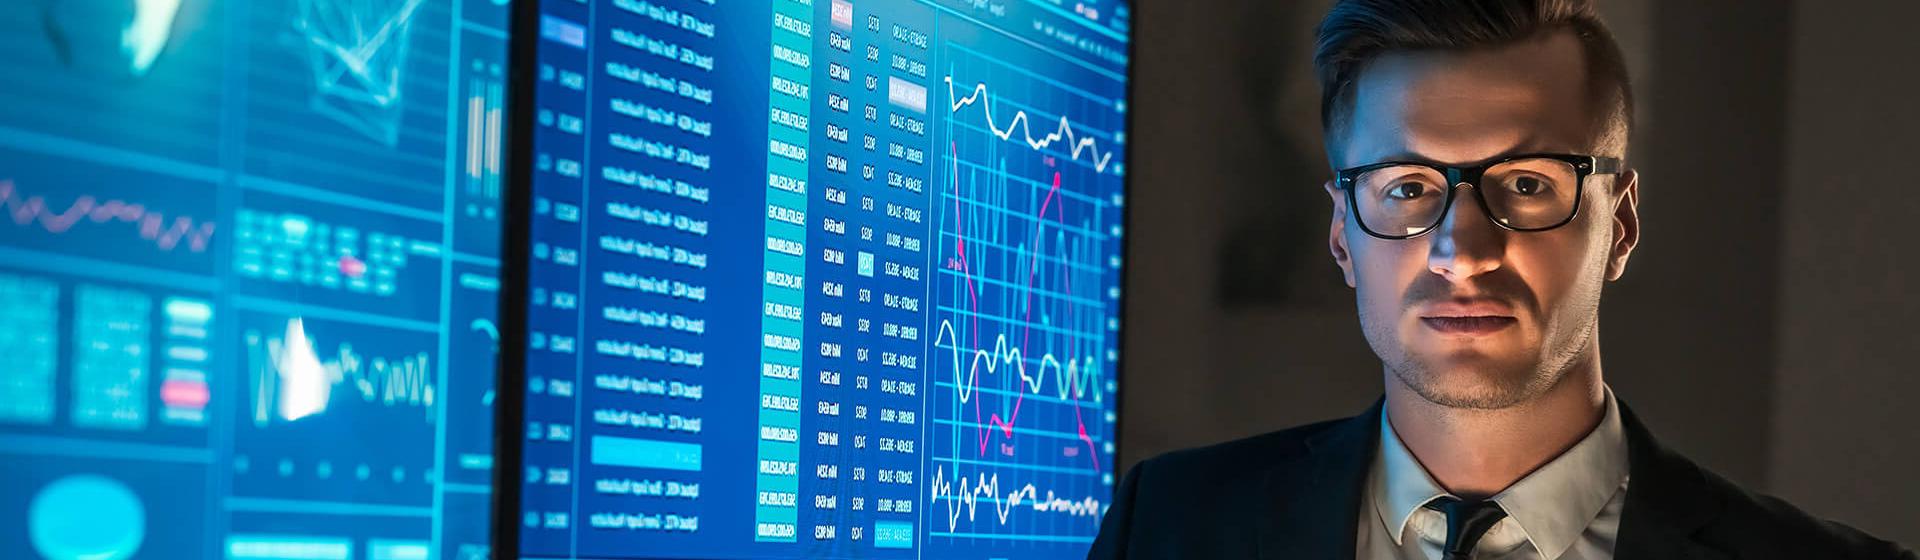 Un homme d’affaires portant des lunettes se tient devant deux grands écrans affichant des données et graphiques d’un logiciel maritime. Il regarde l’objectif en tenant une tablette numérique.